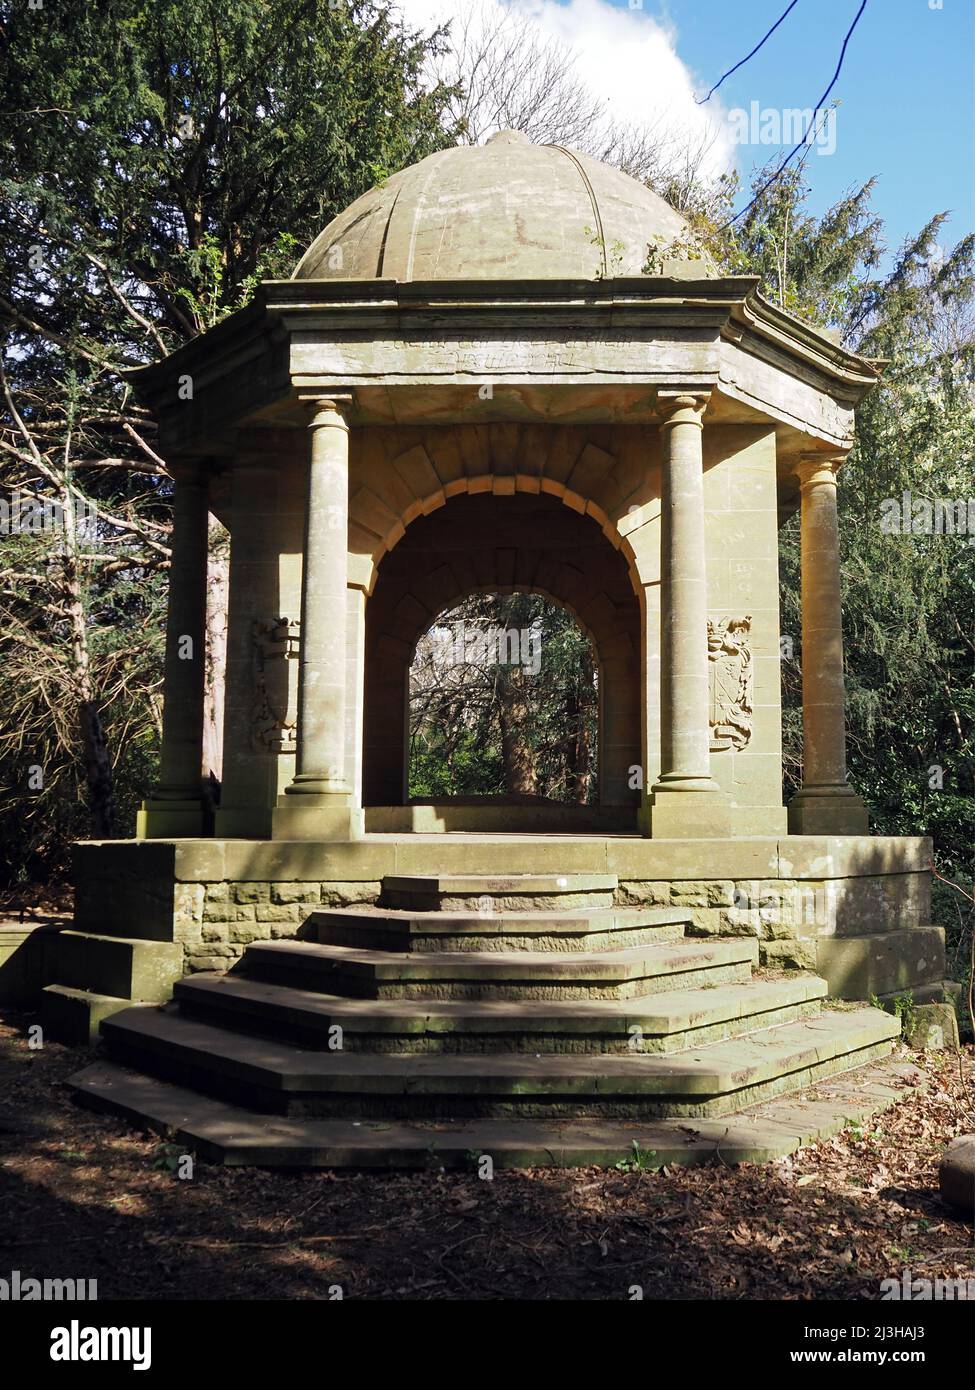 Sir Henry Samuelson Mausoleum 'Temple of Sleep' Wisley und Ockham Common, Chatley Heath, Surrey, Großbritannien. Stockfoto